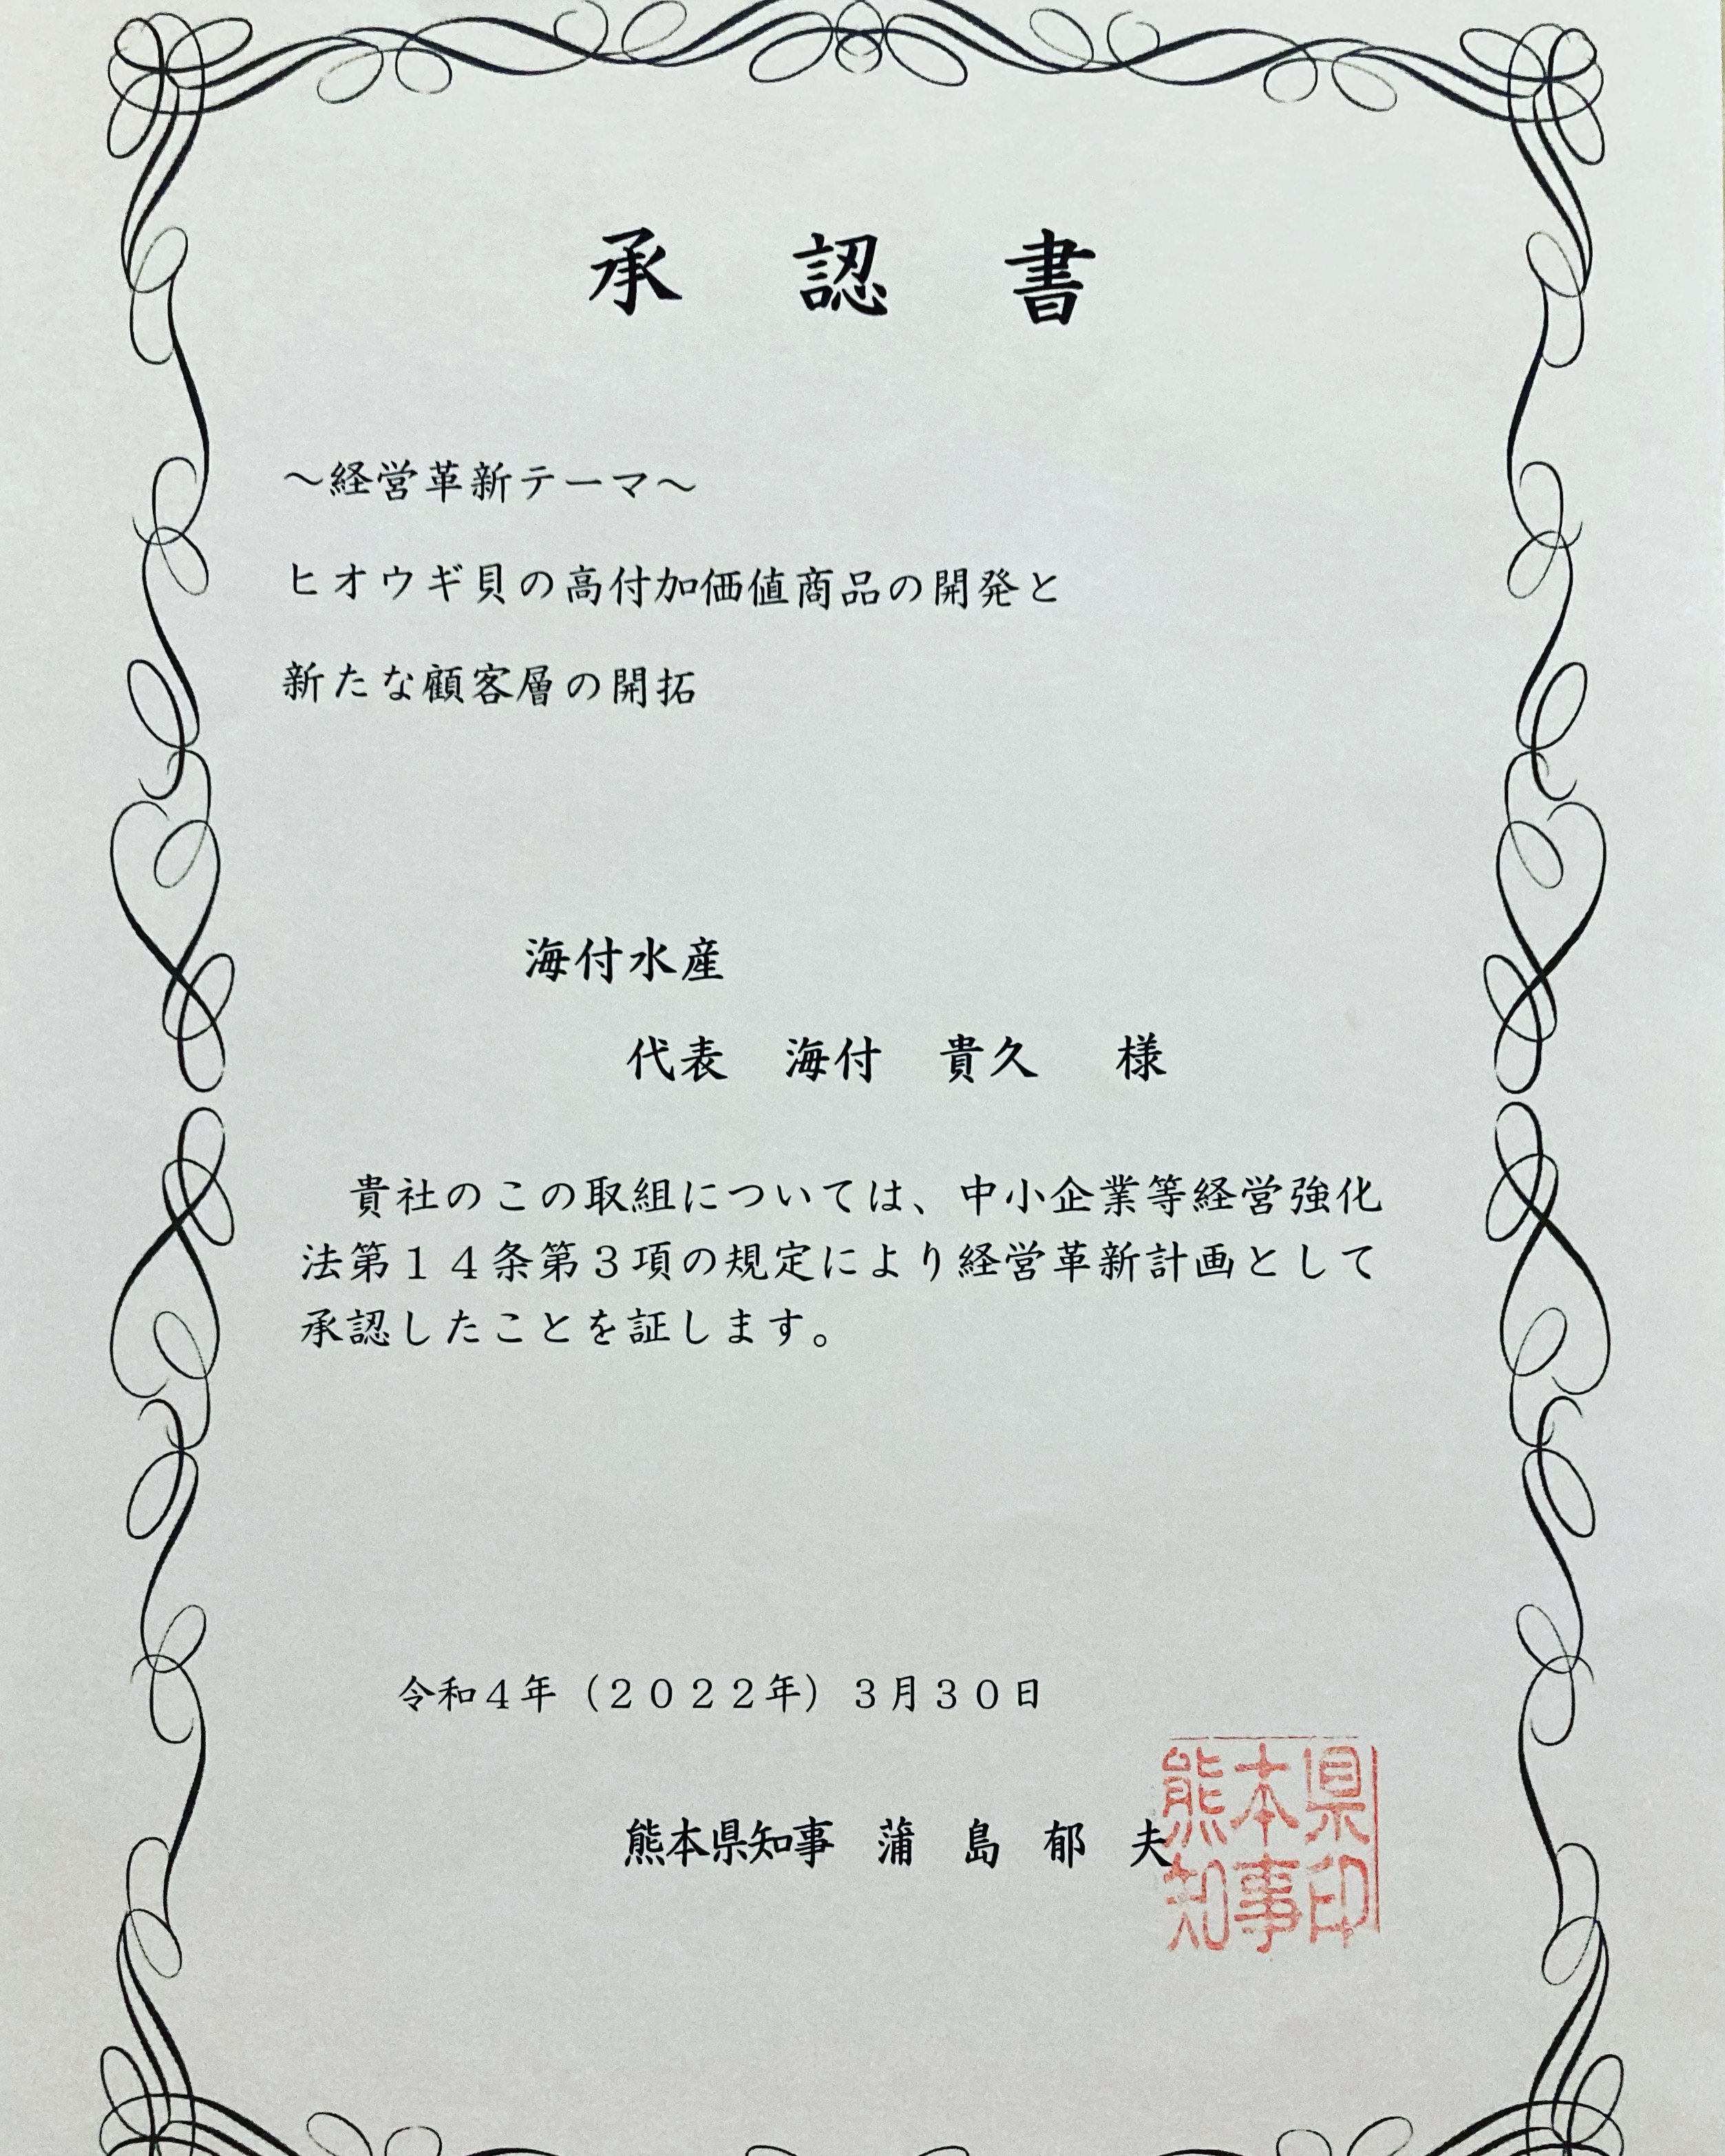 熊本県水産研究との共同開発【冷凍ヒオウギ貝】が県知事に承認されました